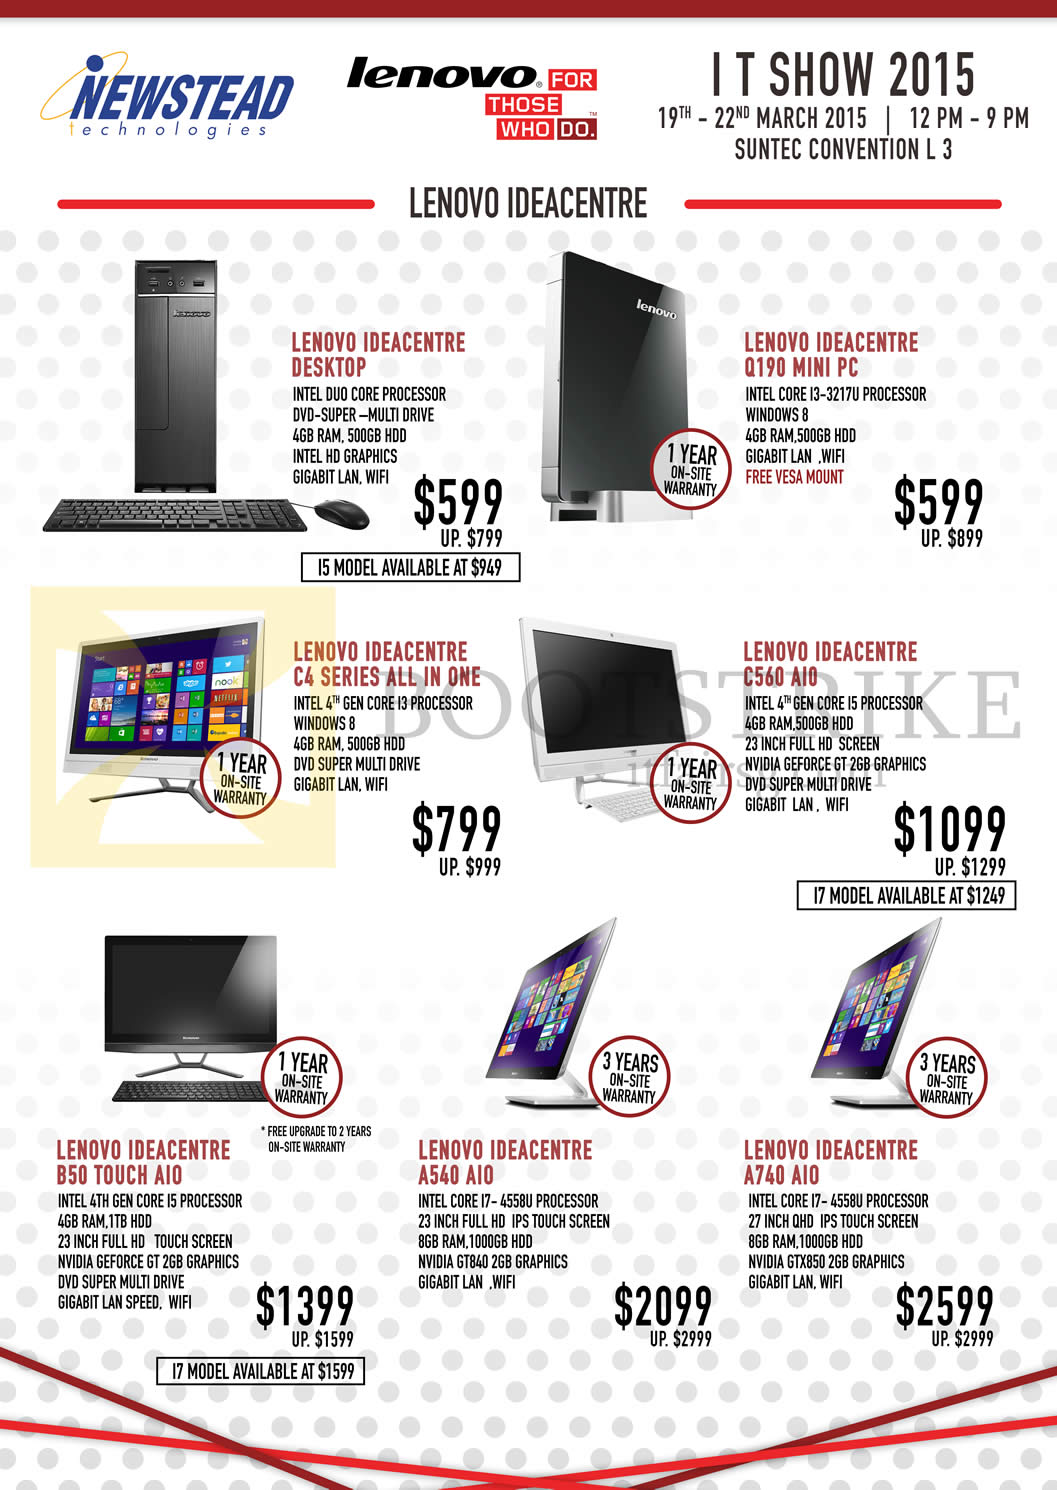 IT SHOW 2015 price list image brochure of Lenovo Newstead Desktop PCs, AIO Desktop PCs, Ideacentre Q190, C4 Series, C560, B50 Touch, A540, A740